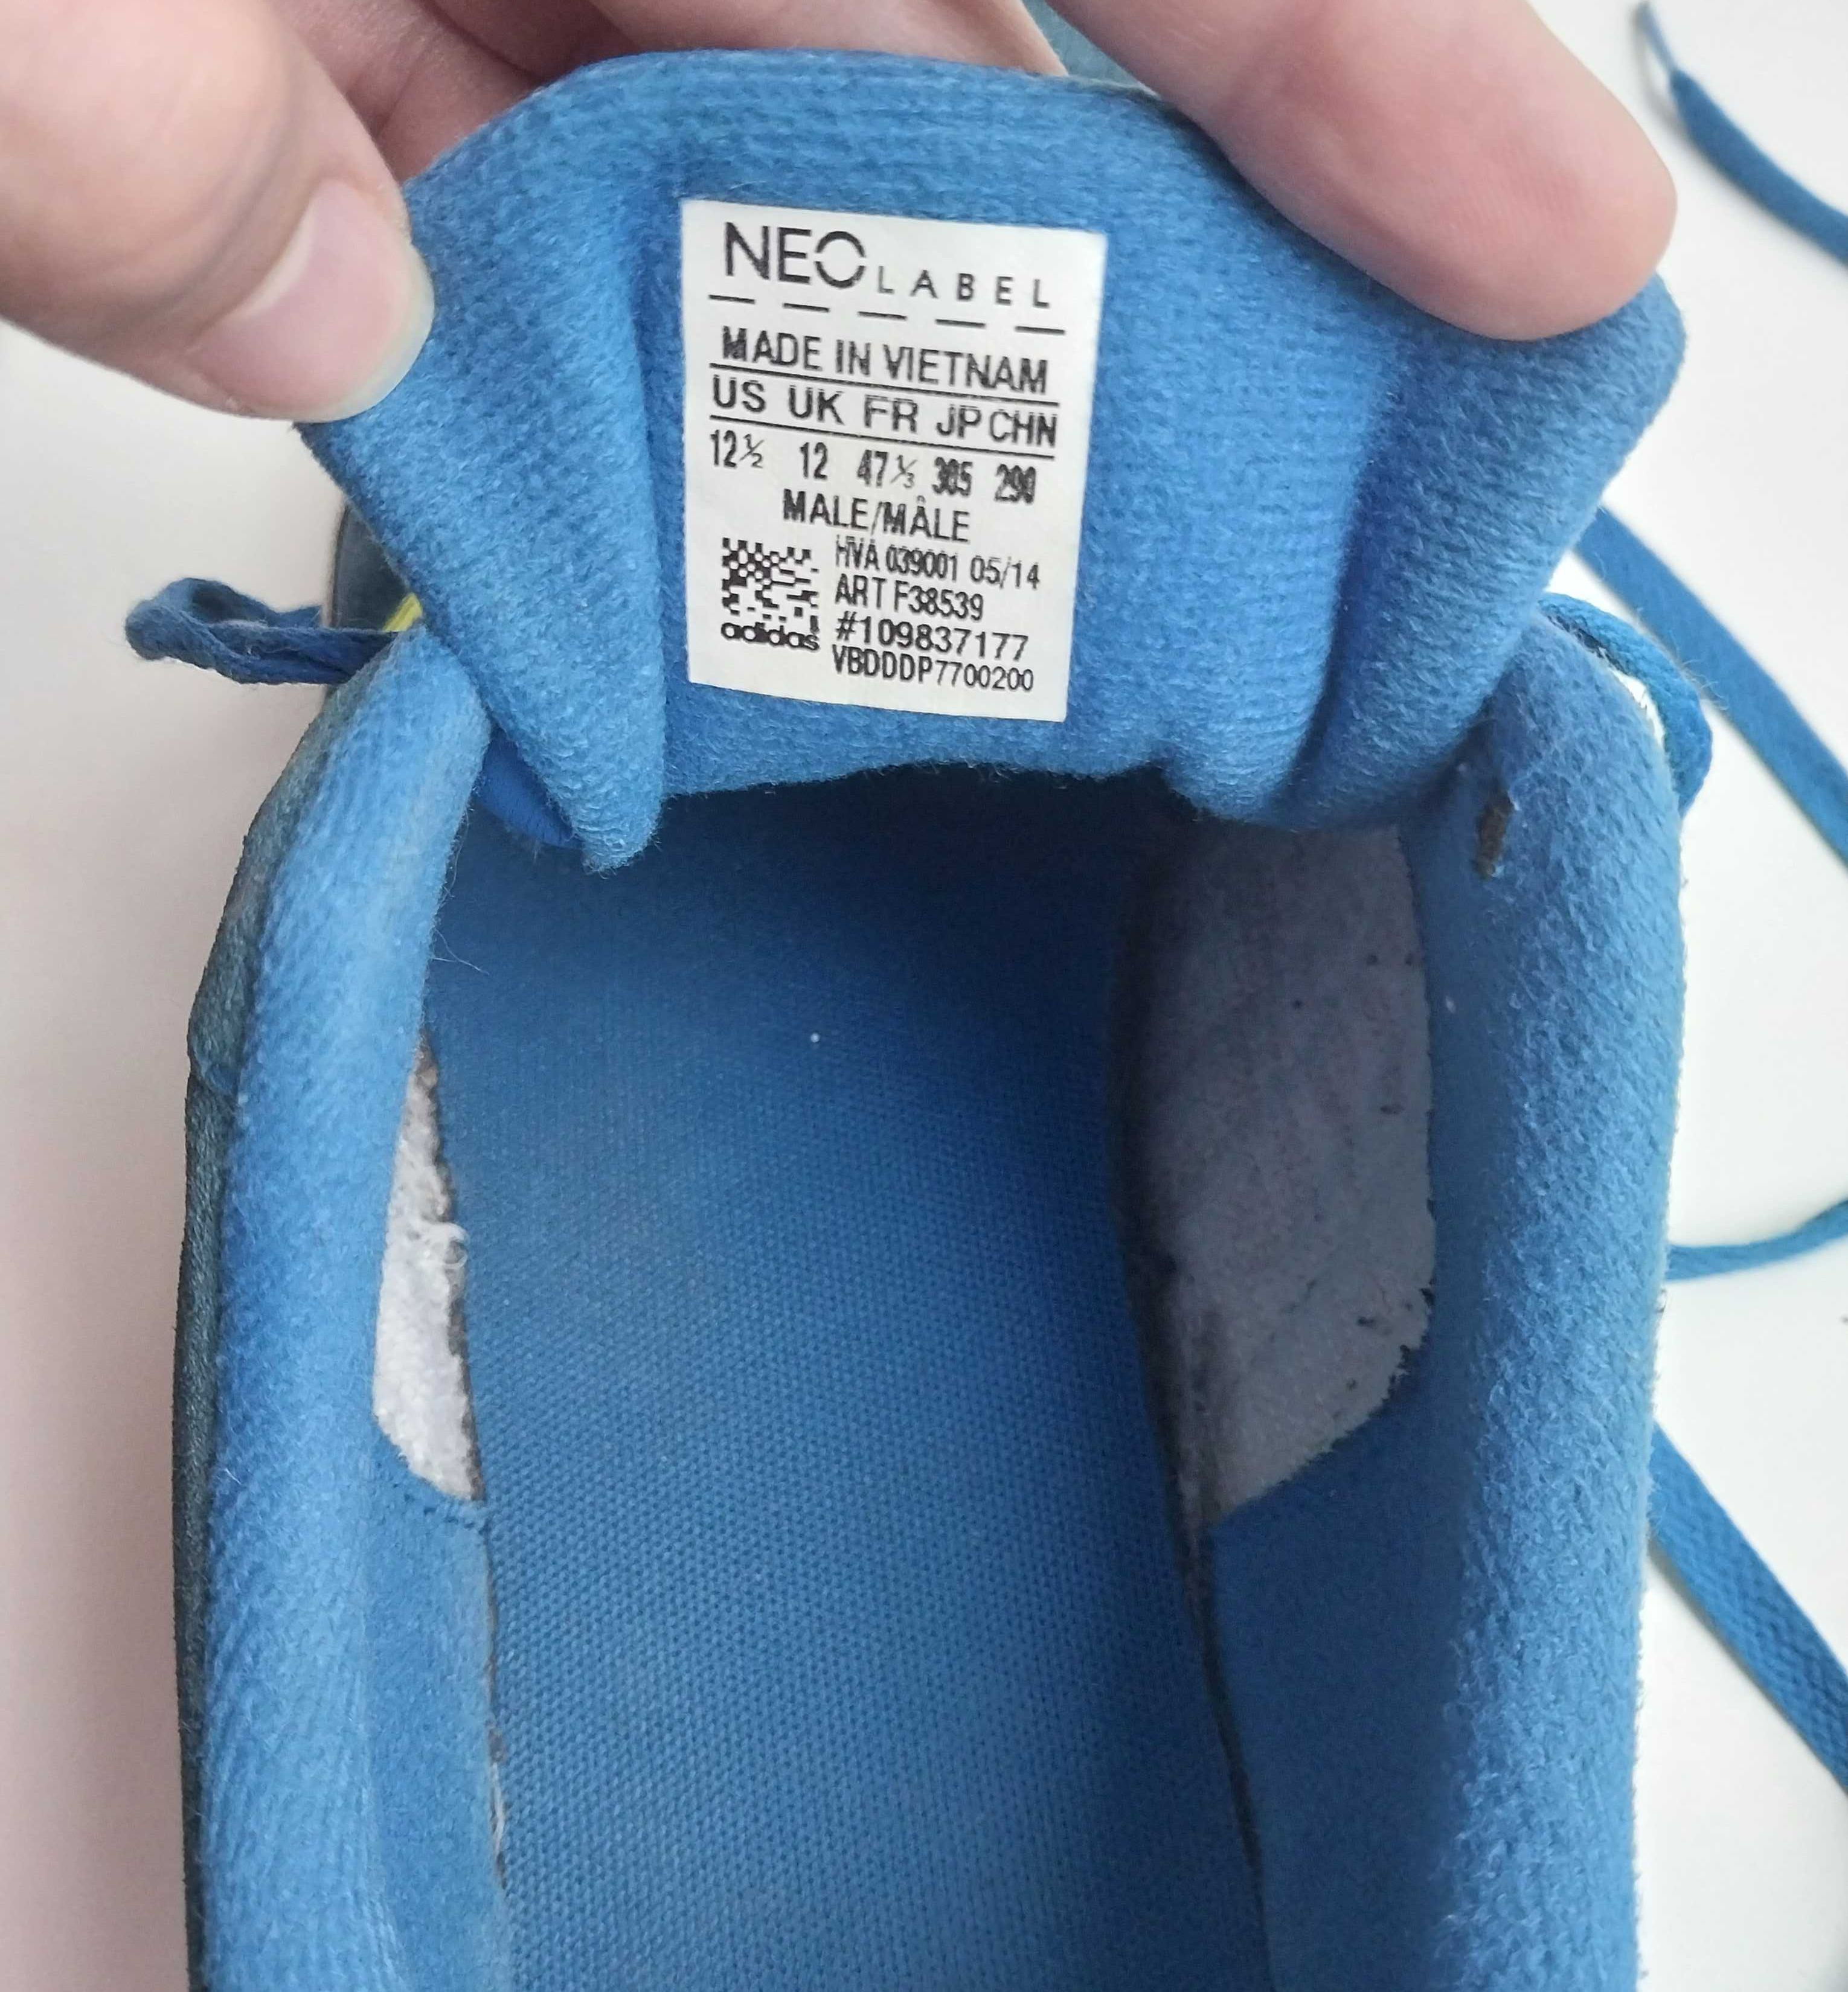 Adidas Neo Label Вьетнам кроссовки кожаные Размер 44 Стелька 29 см